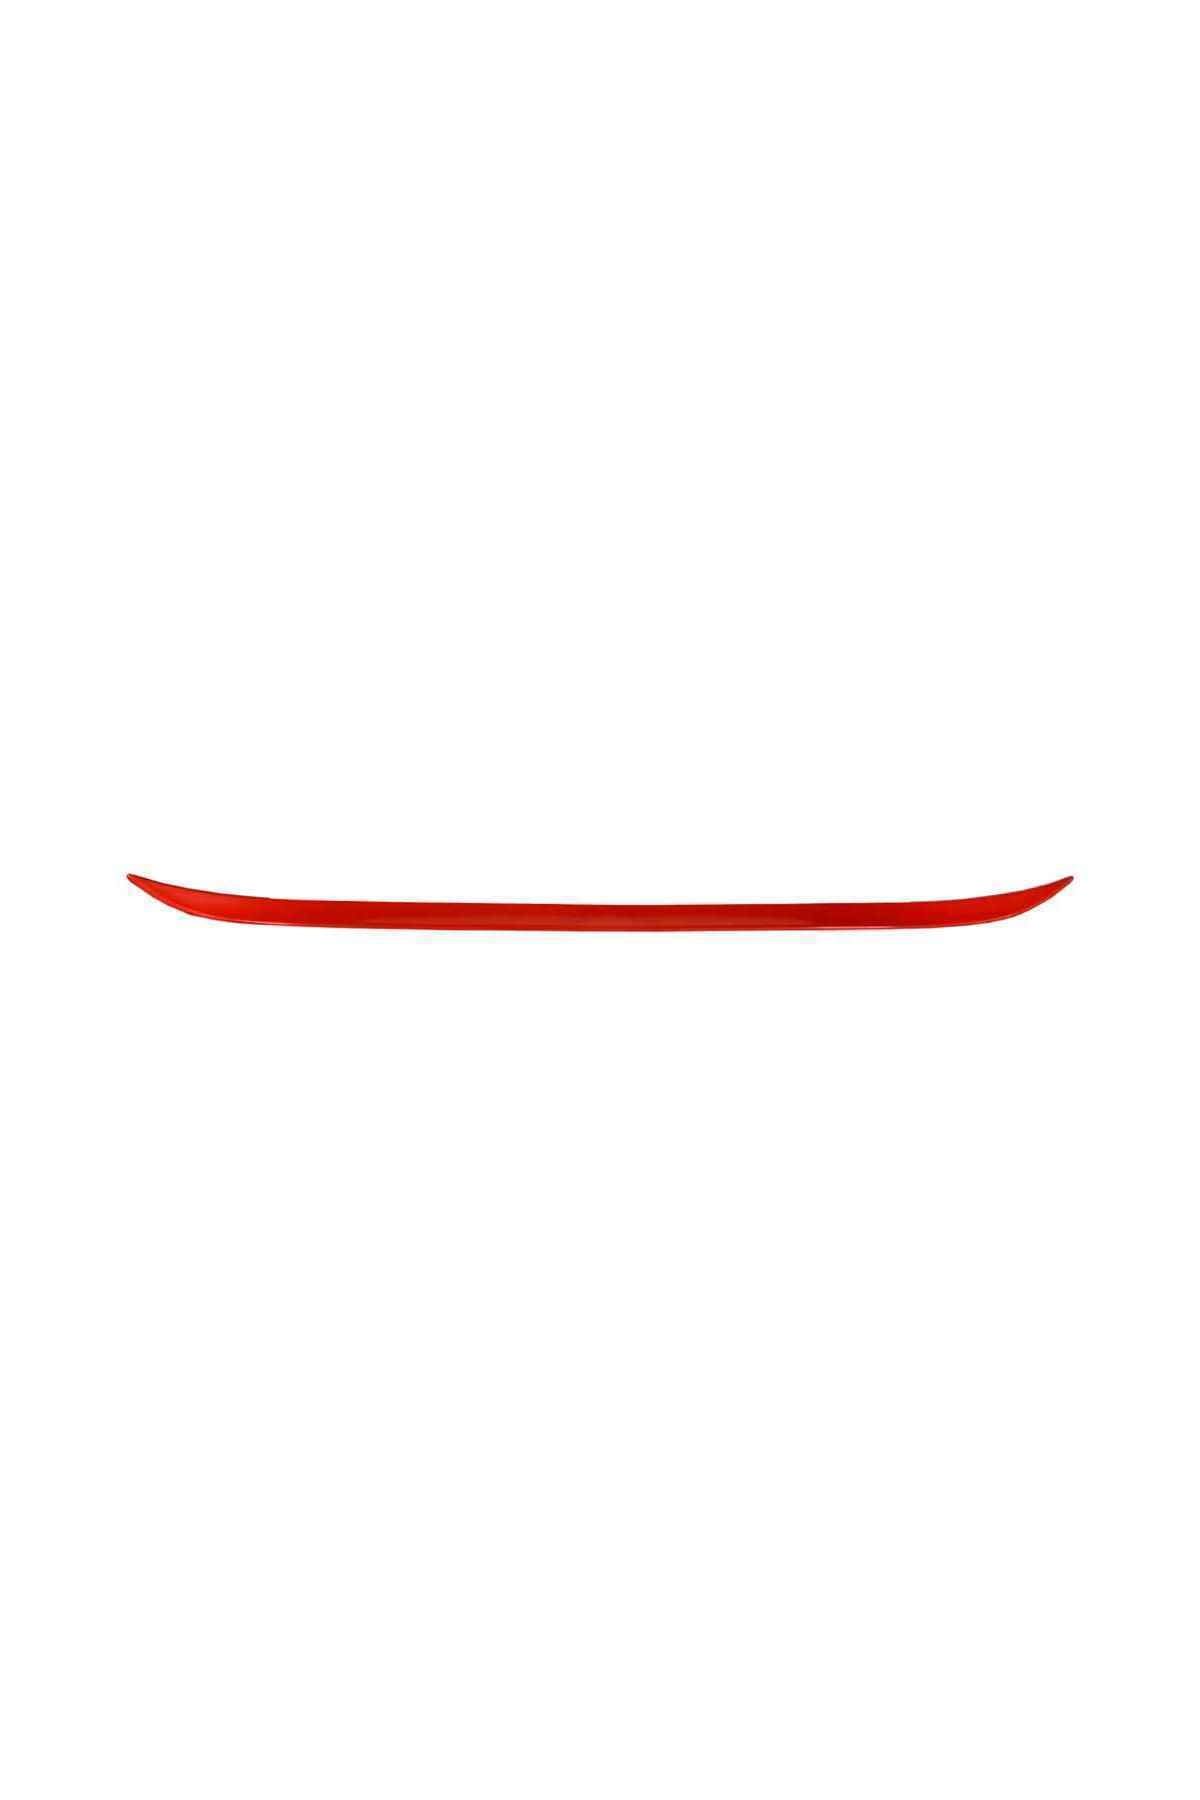 Carub Carpi Parlak Kırmızı Bagaj Çıtası Ergonomik Bıyık 120 Cm X 4 Cm Br2790145